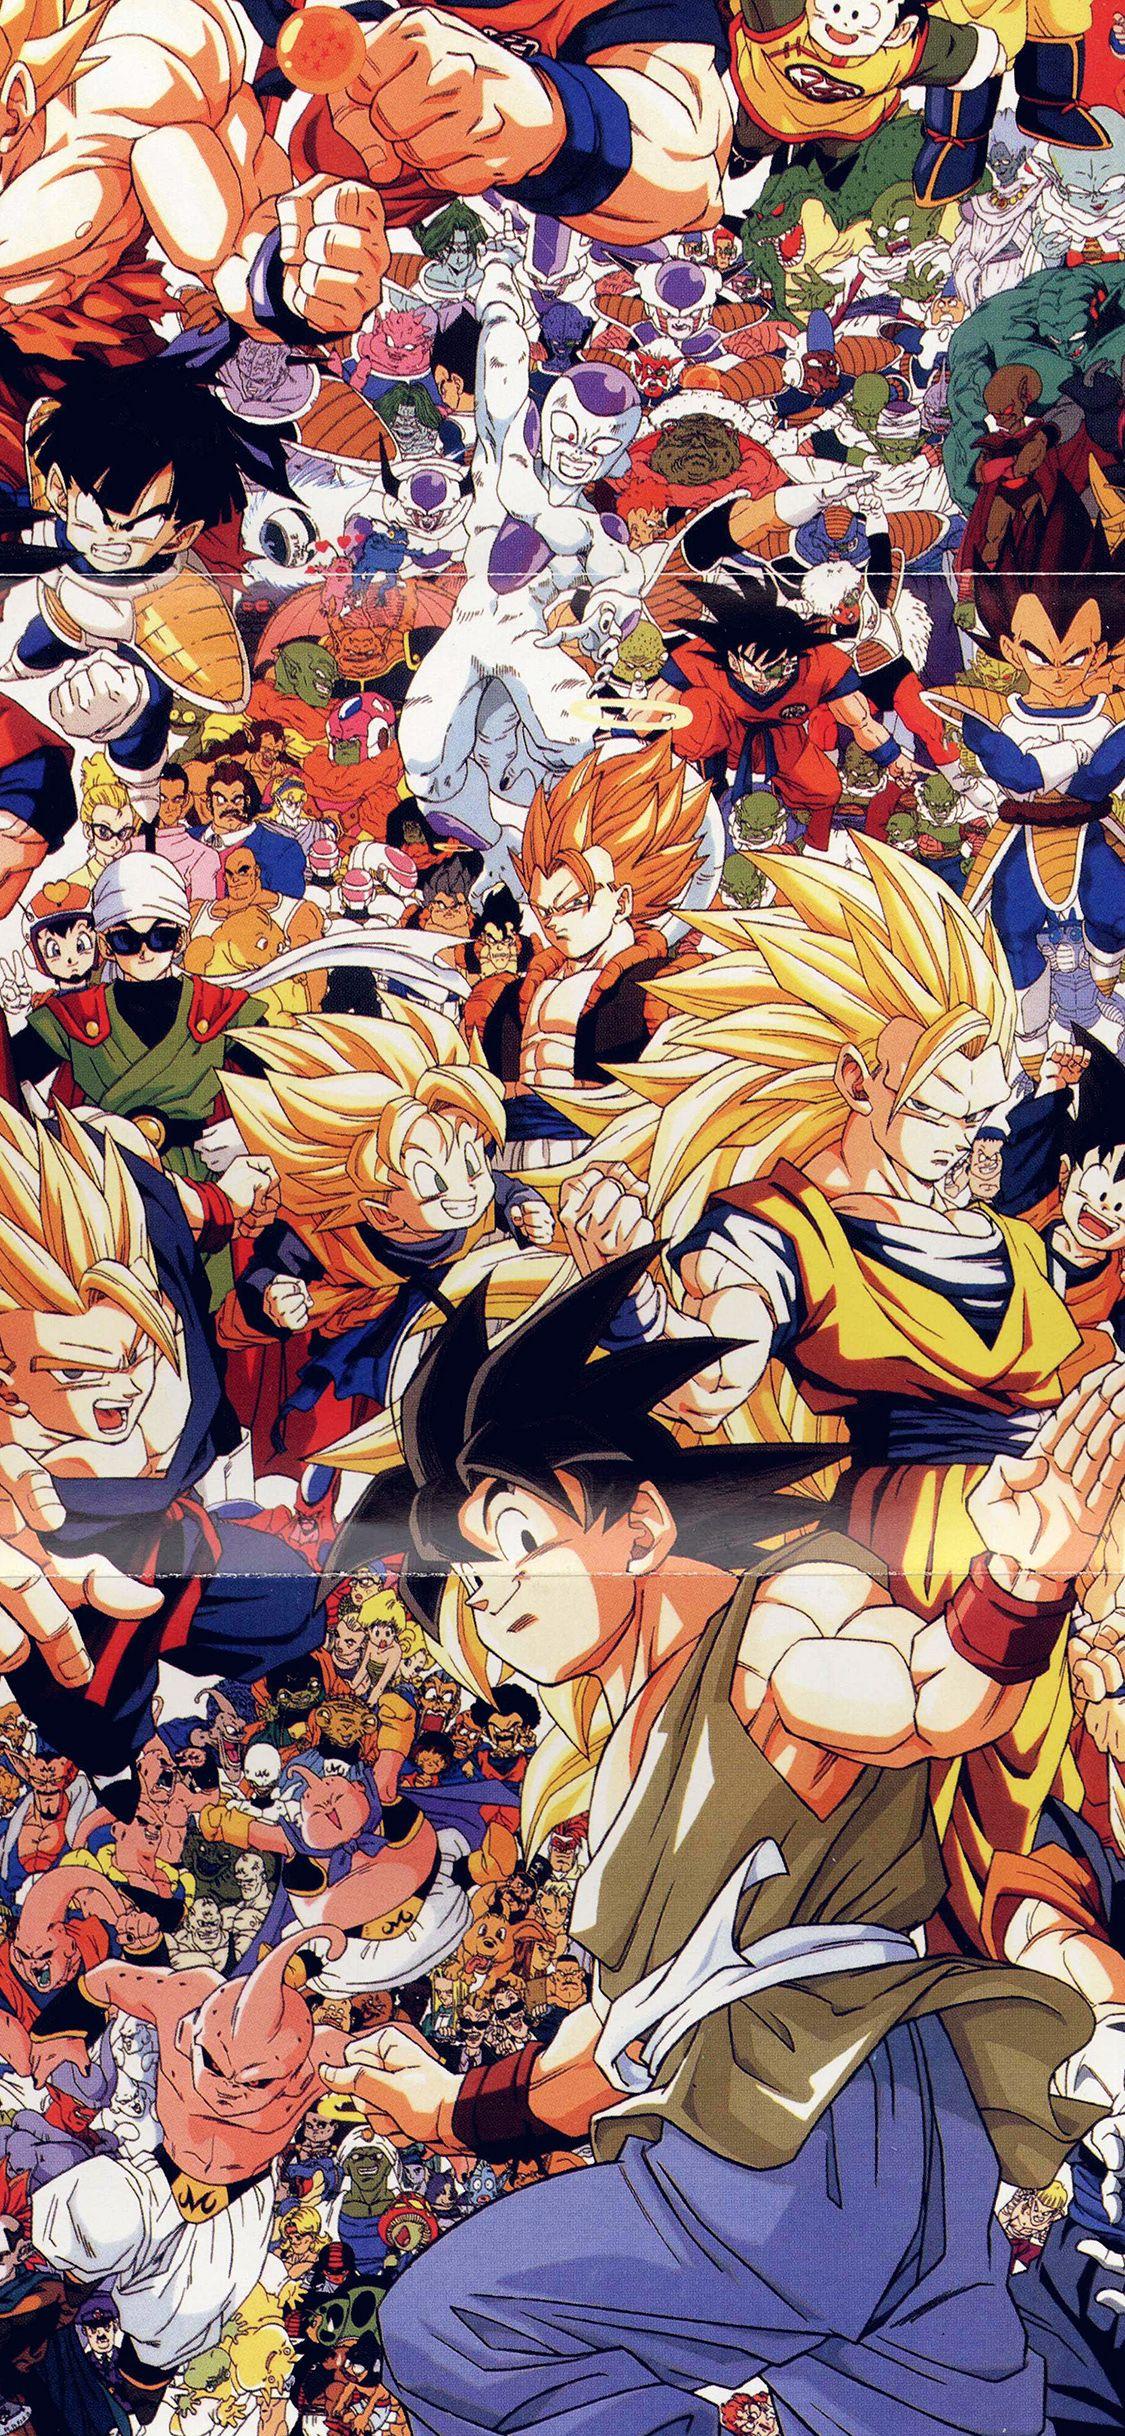 Dragon Ball Manga Wallpapers - Top Free Dragon Ball Manga Backgrounds